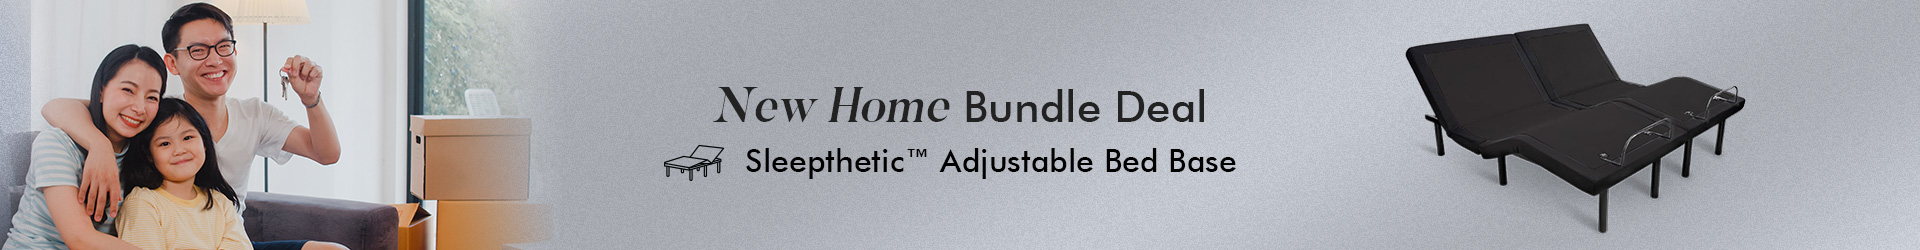 2-New-Home-Title-Banner-sleepthetic-adjustable-bed-base.jpg